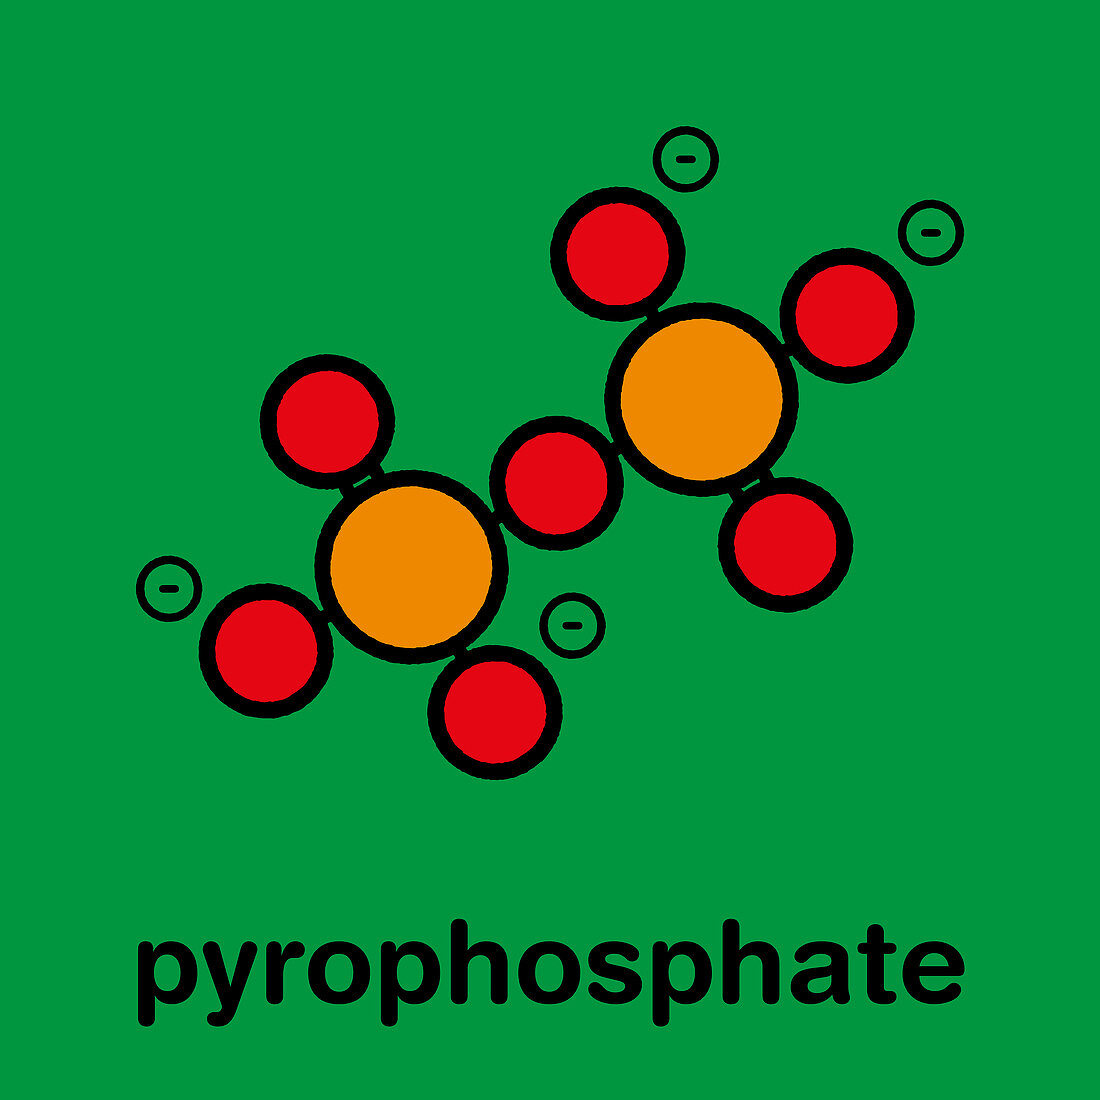 Pyrophosphate anion, illustration